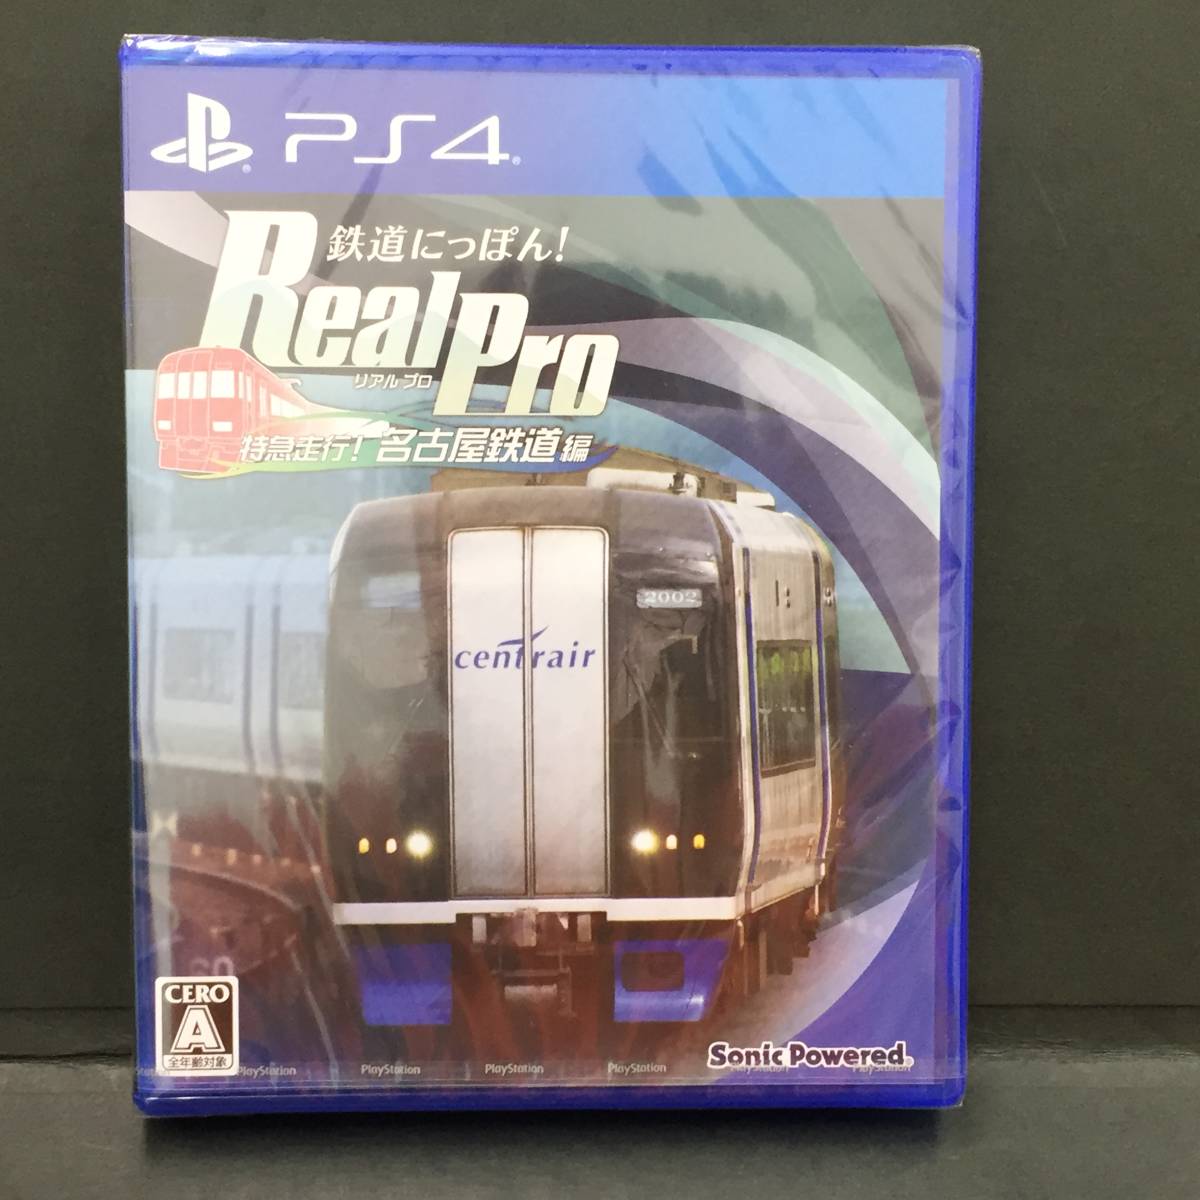 △▽新品/PS4ソフト【 鉄道にっぽん! Real Pro 特急走行! 名古屋鉄道編 